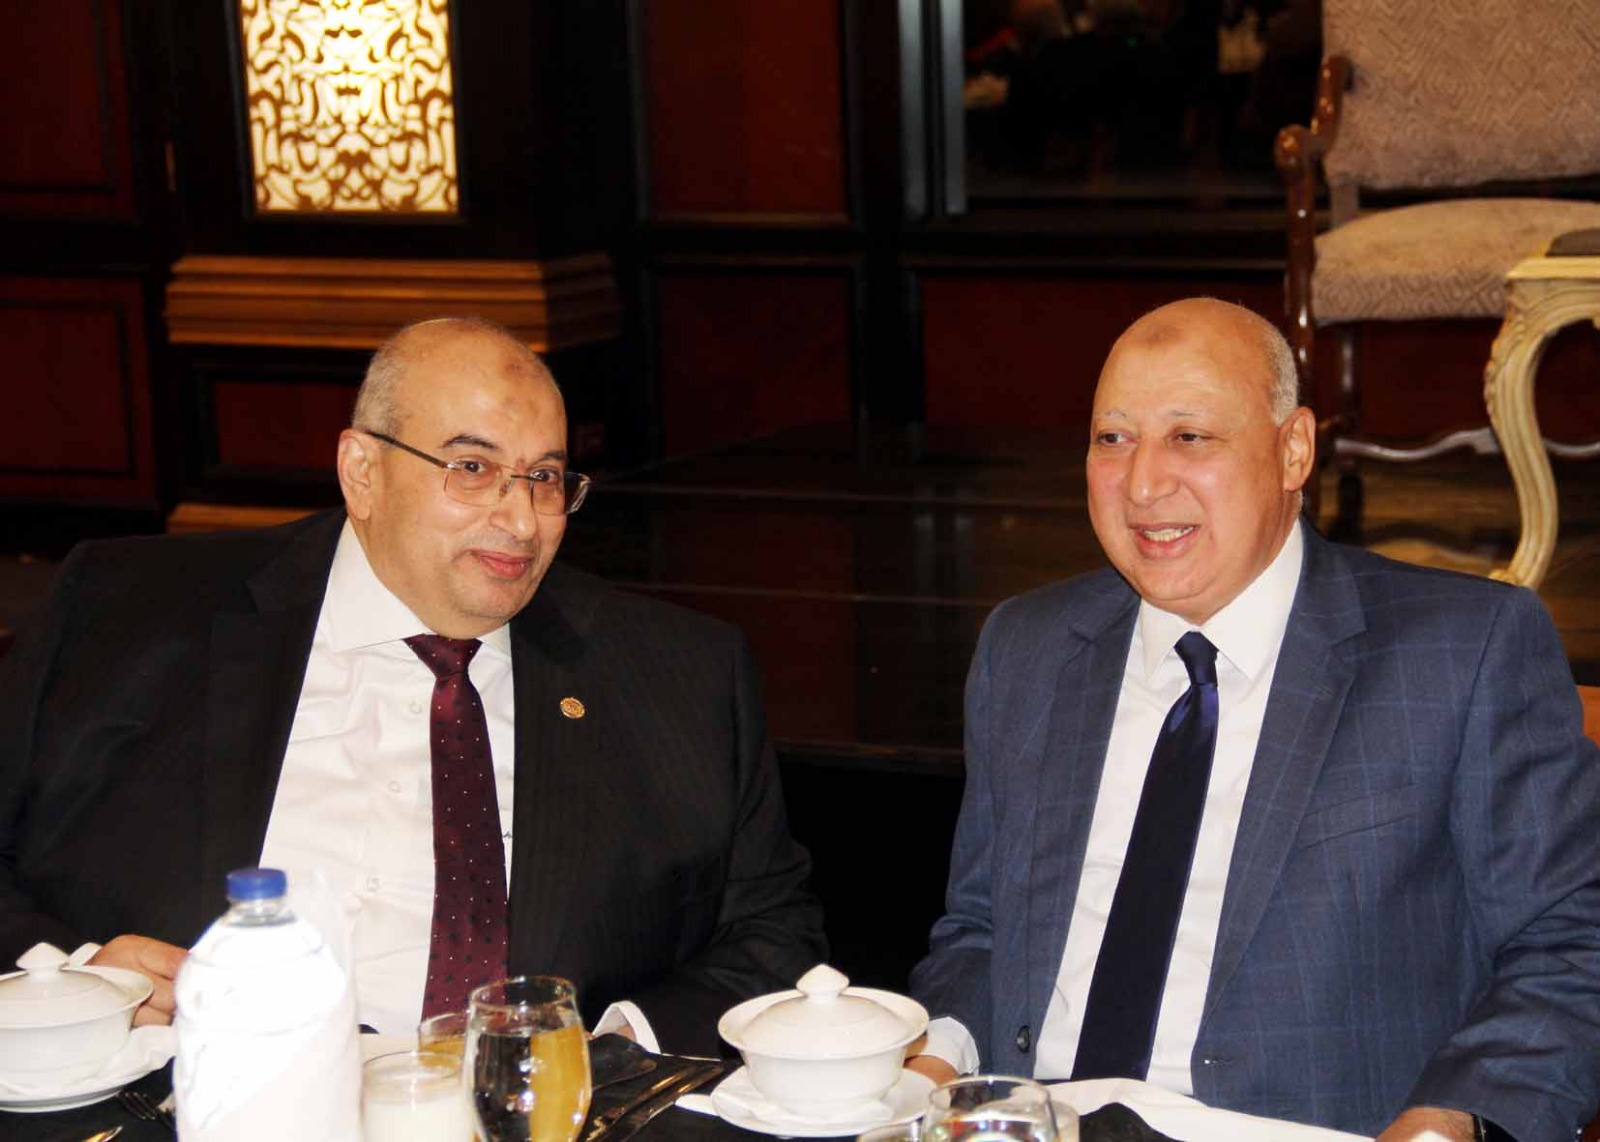 مختار توفيق رئيس مصلحة الضرائب المصرية مع أشرف عبدالغني رئيس جمعية خبراء الضرائب المصرية 